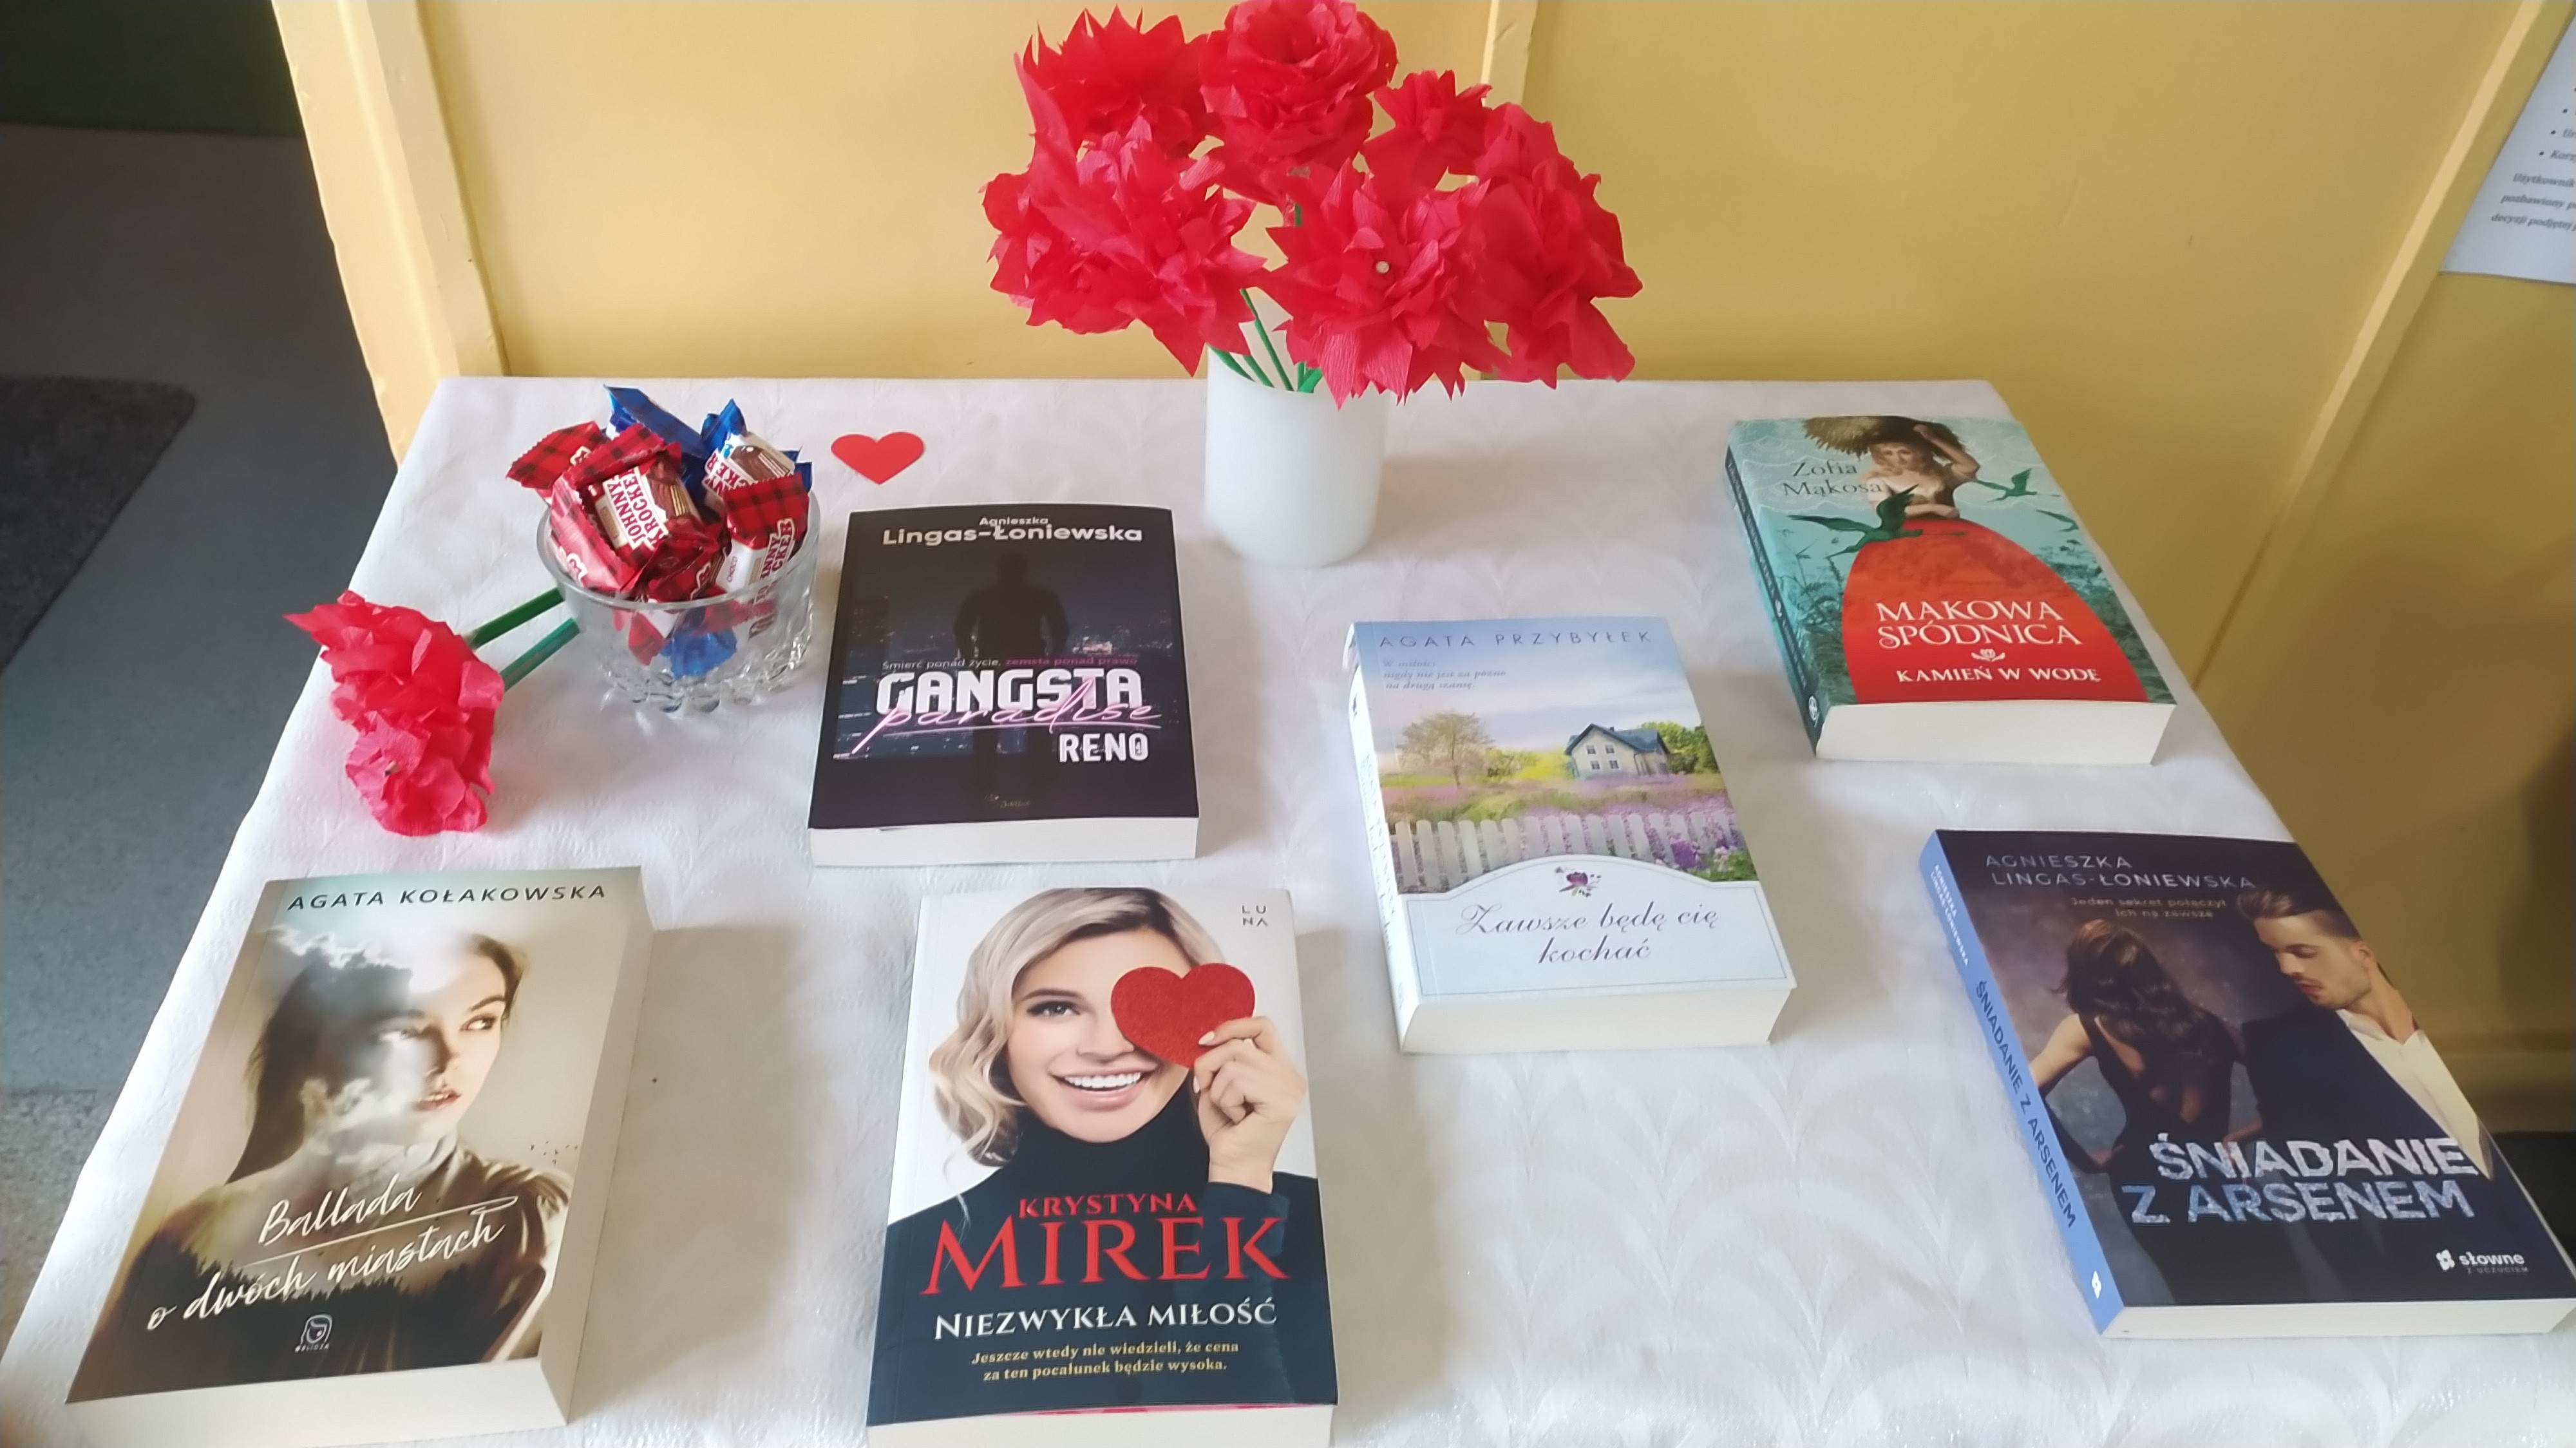 Stolik przygotowany z myślą o Dniu Kobiet, a na nim kwiaty z bibuły i książki polskich autorek